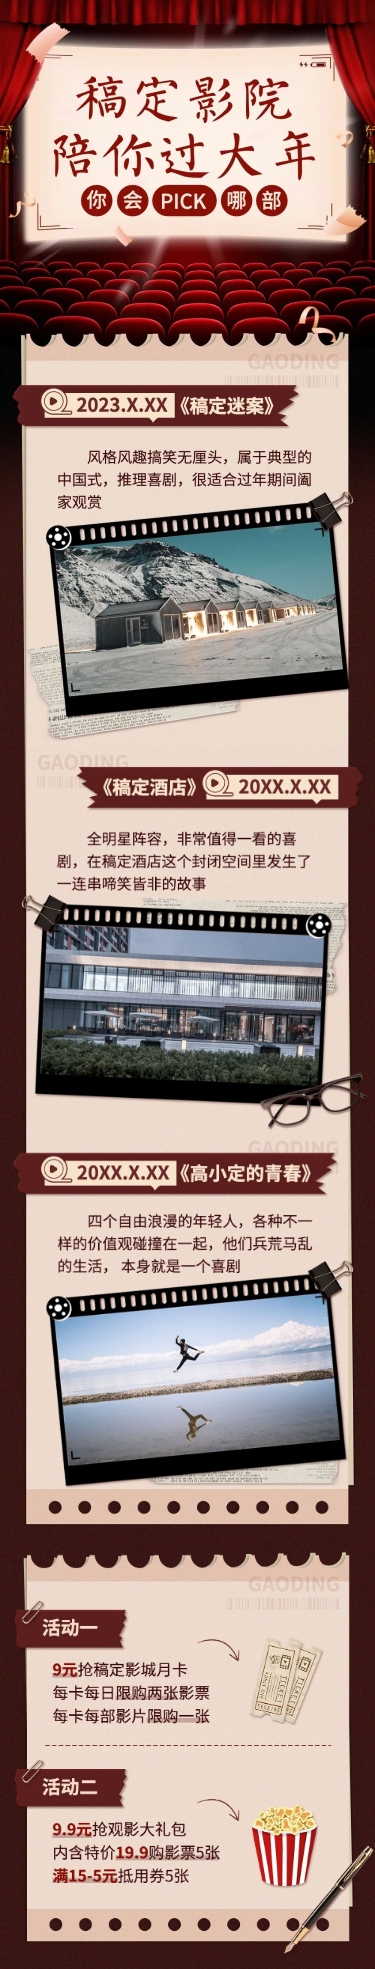 春节电影院促销活动宣传长图预览效果